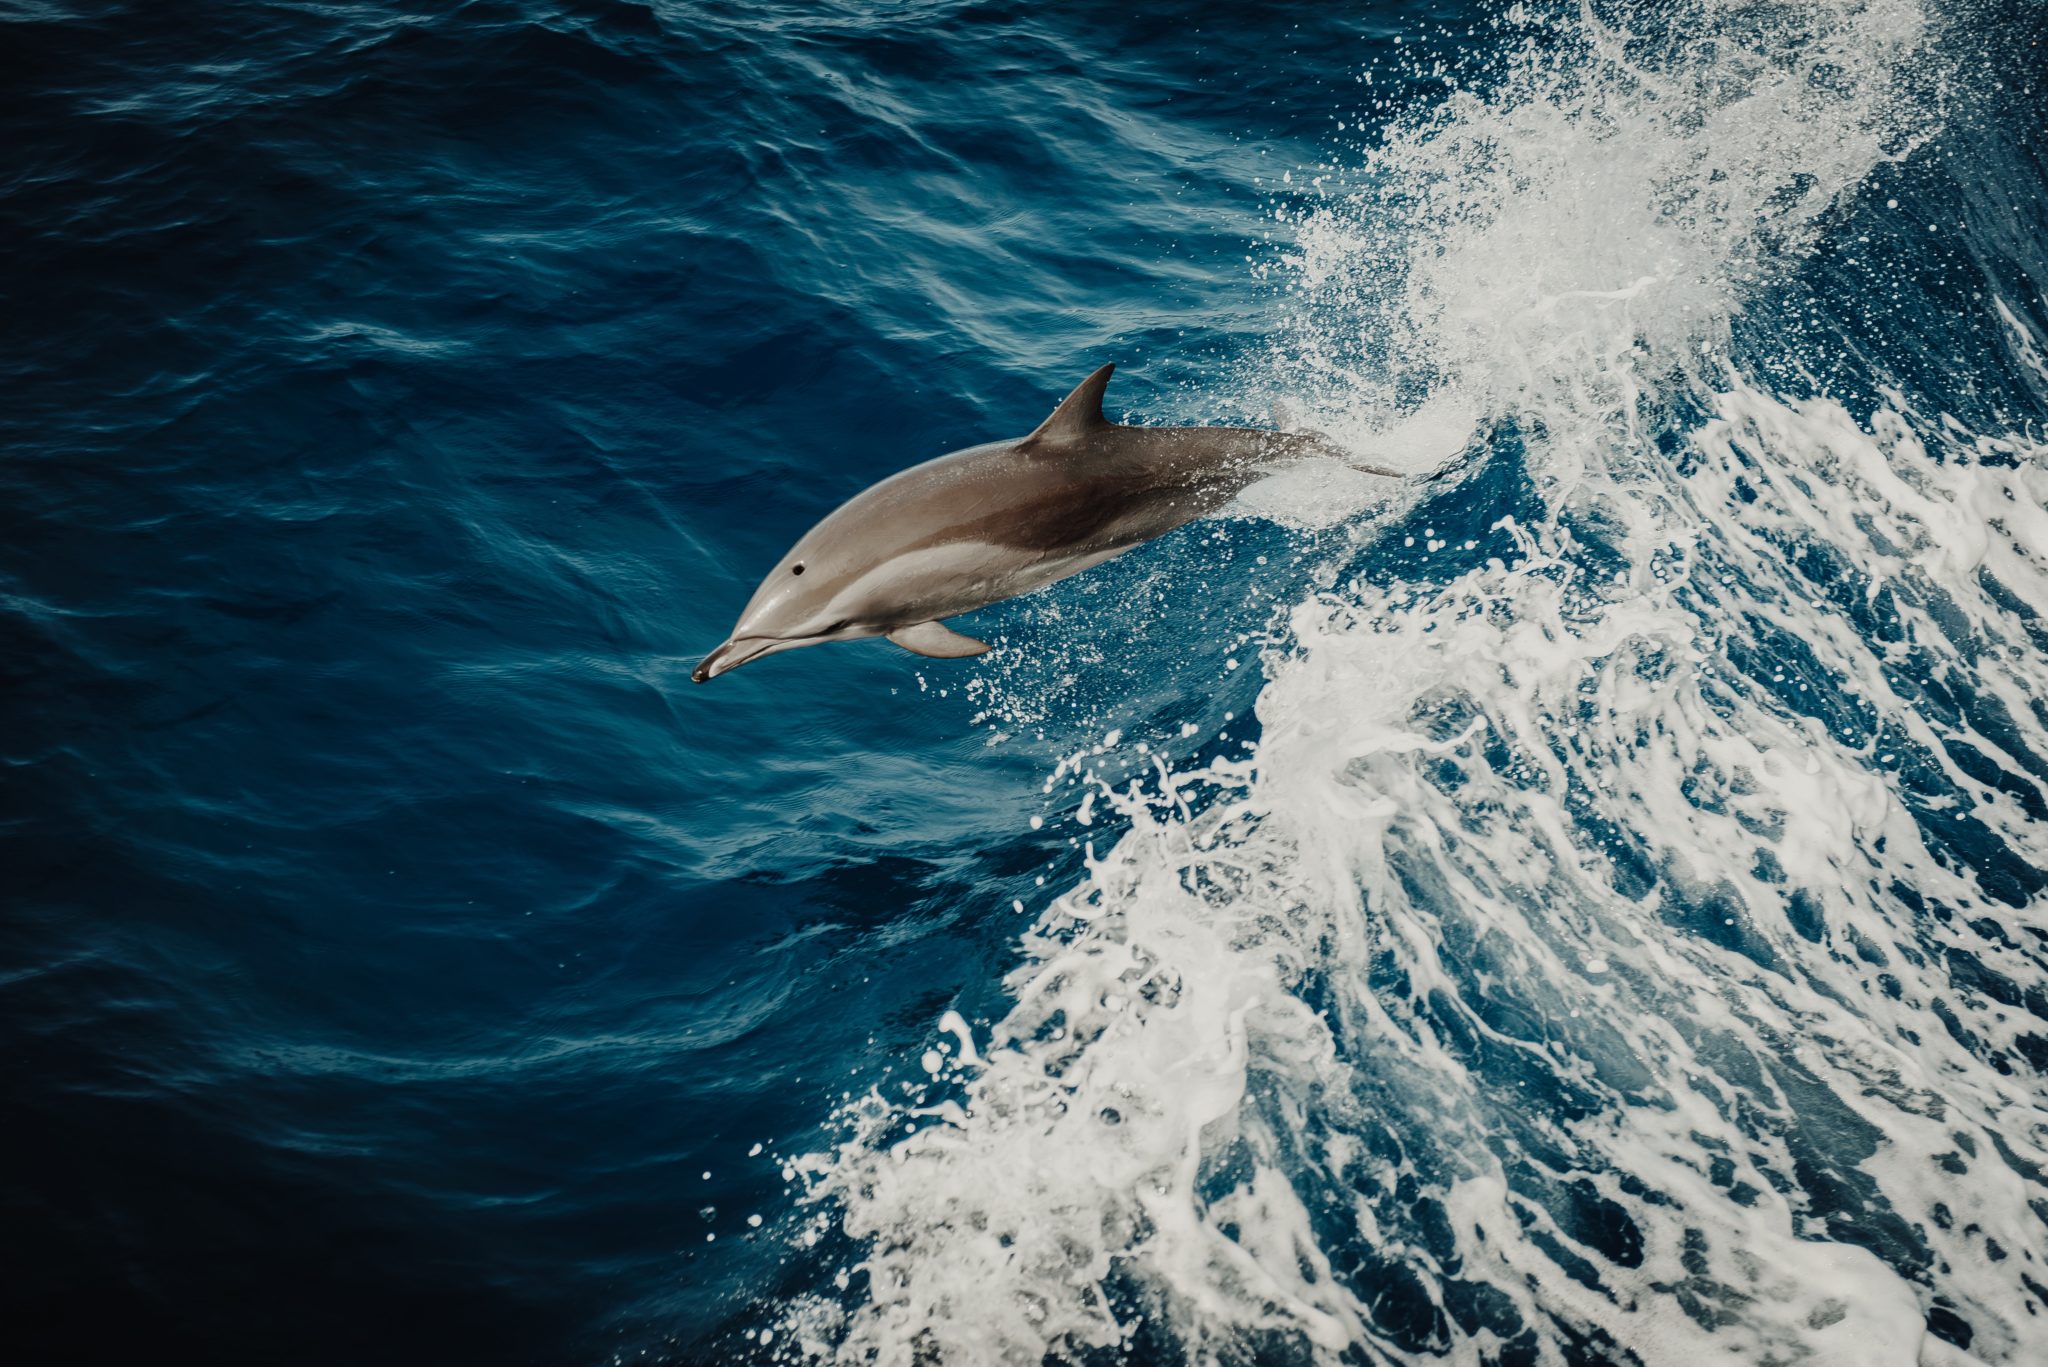 Delfin in Flugphase in aufbrechender Welle. Tiefe Dunkelblautöne und weiße, brechende Welle